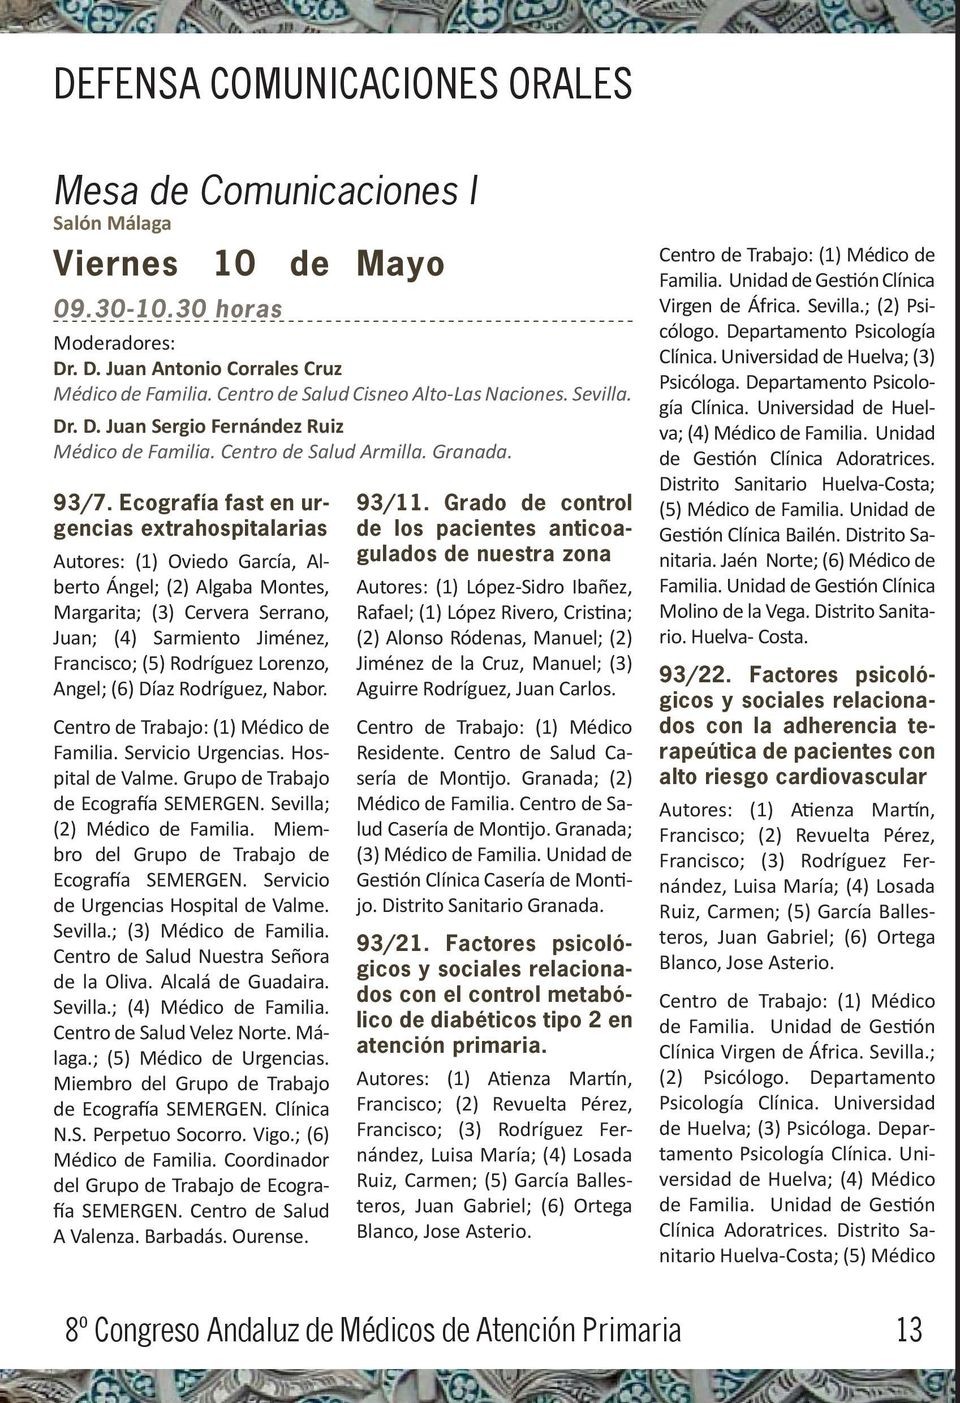 Ecografía fast en urgencias extrahospitalarias Autores: (1) Oviedo García, Alberto Ángel; (2) Algaba Montes, Margarita; (3) Cervera Serrano, Juan; (4) Sarmiento Jiménez, Francisco; (5) Rodríguez